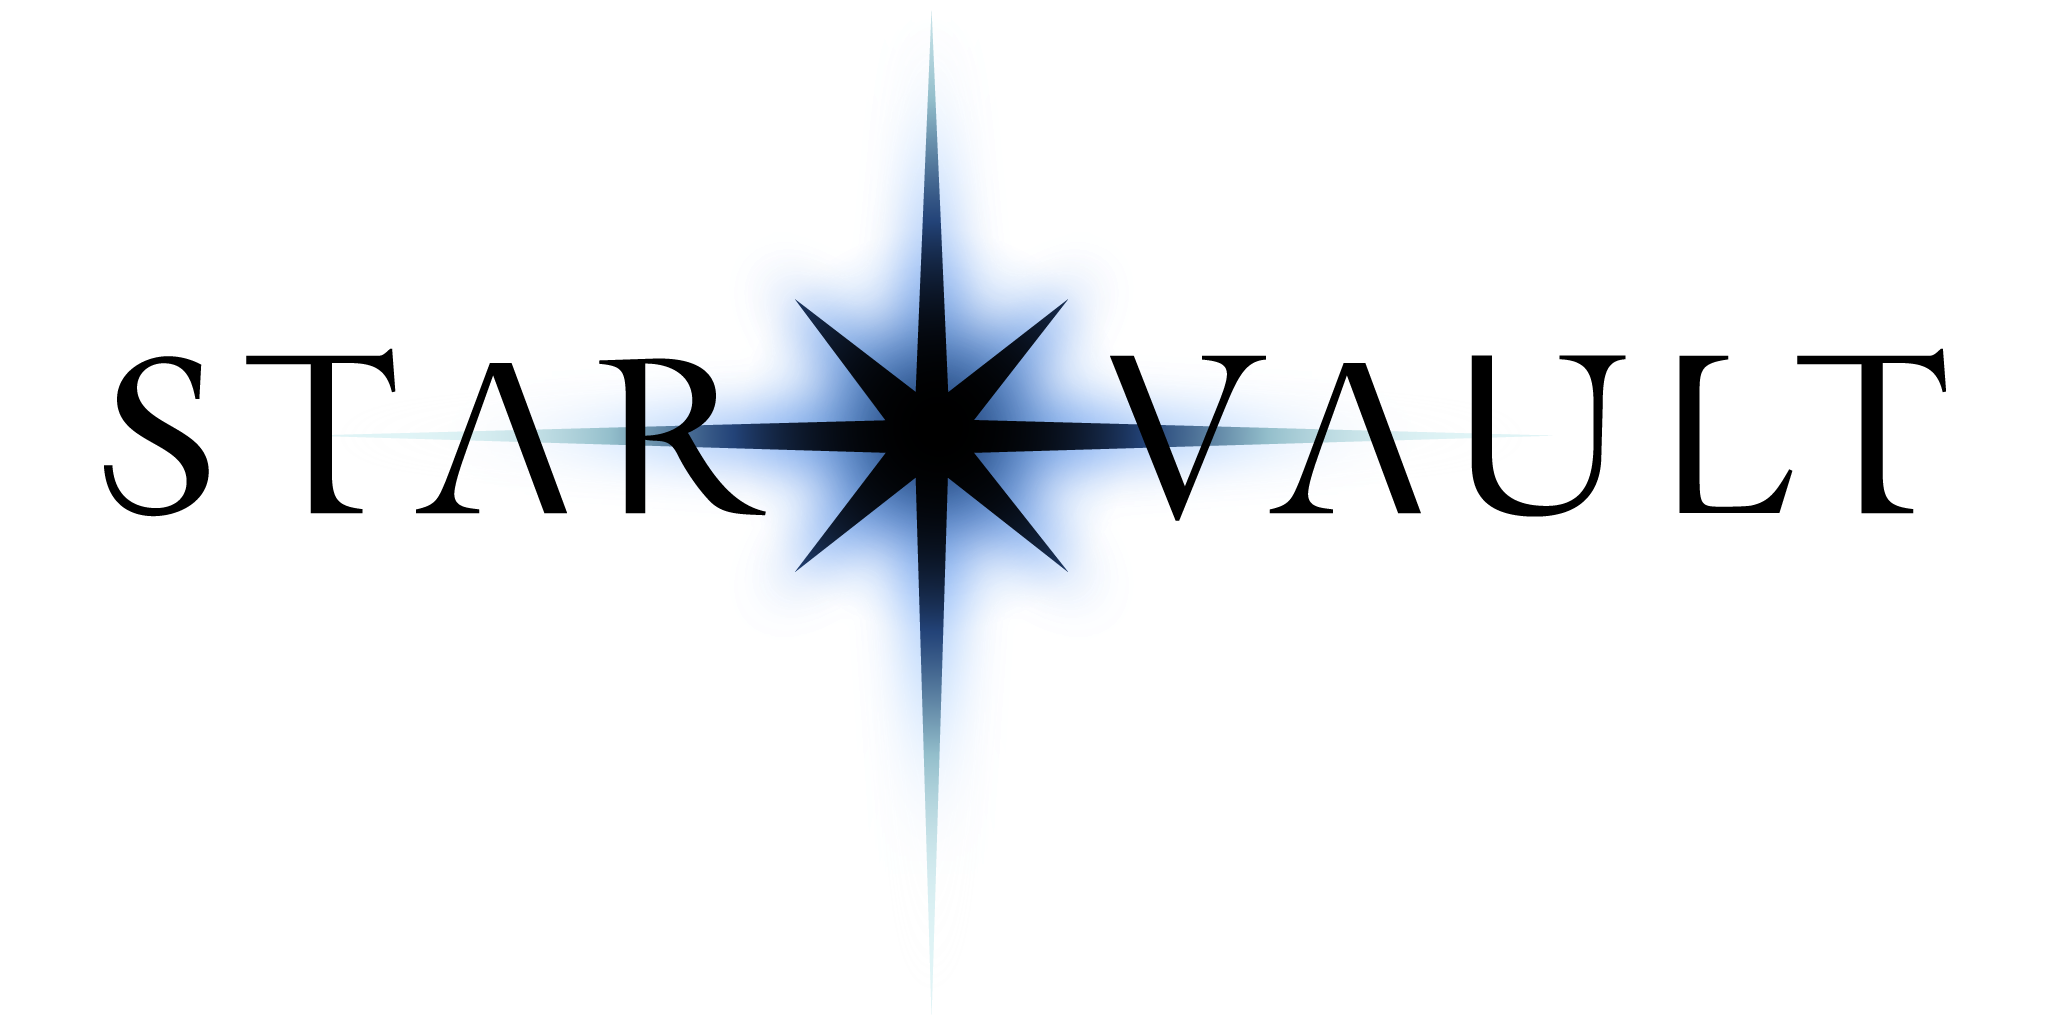 Star Vault logo